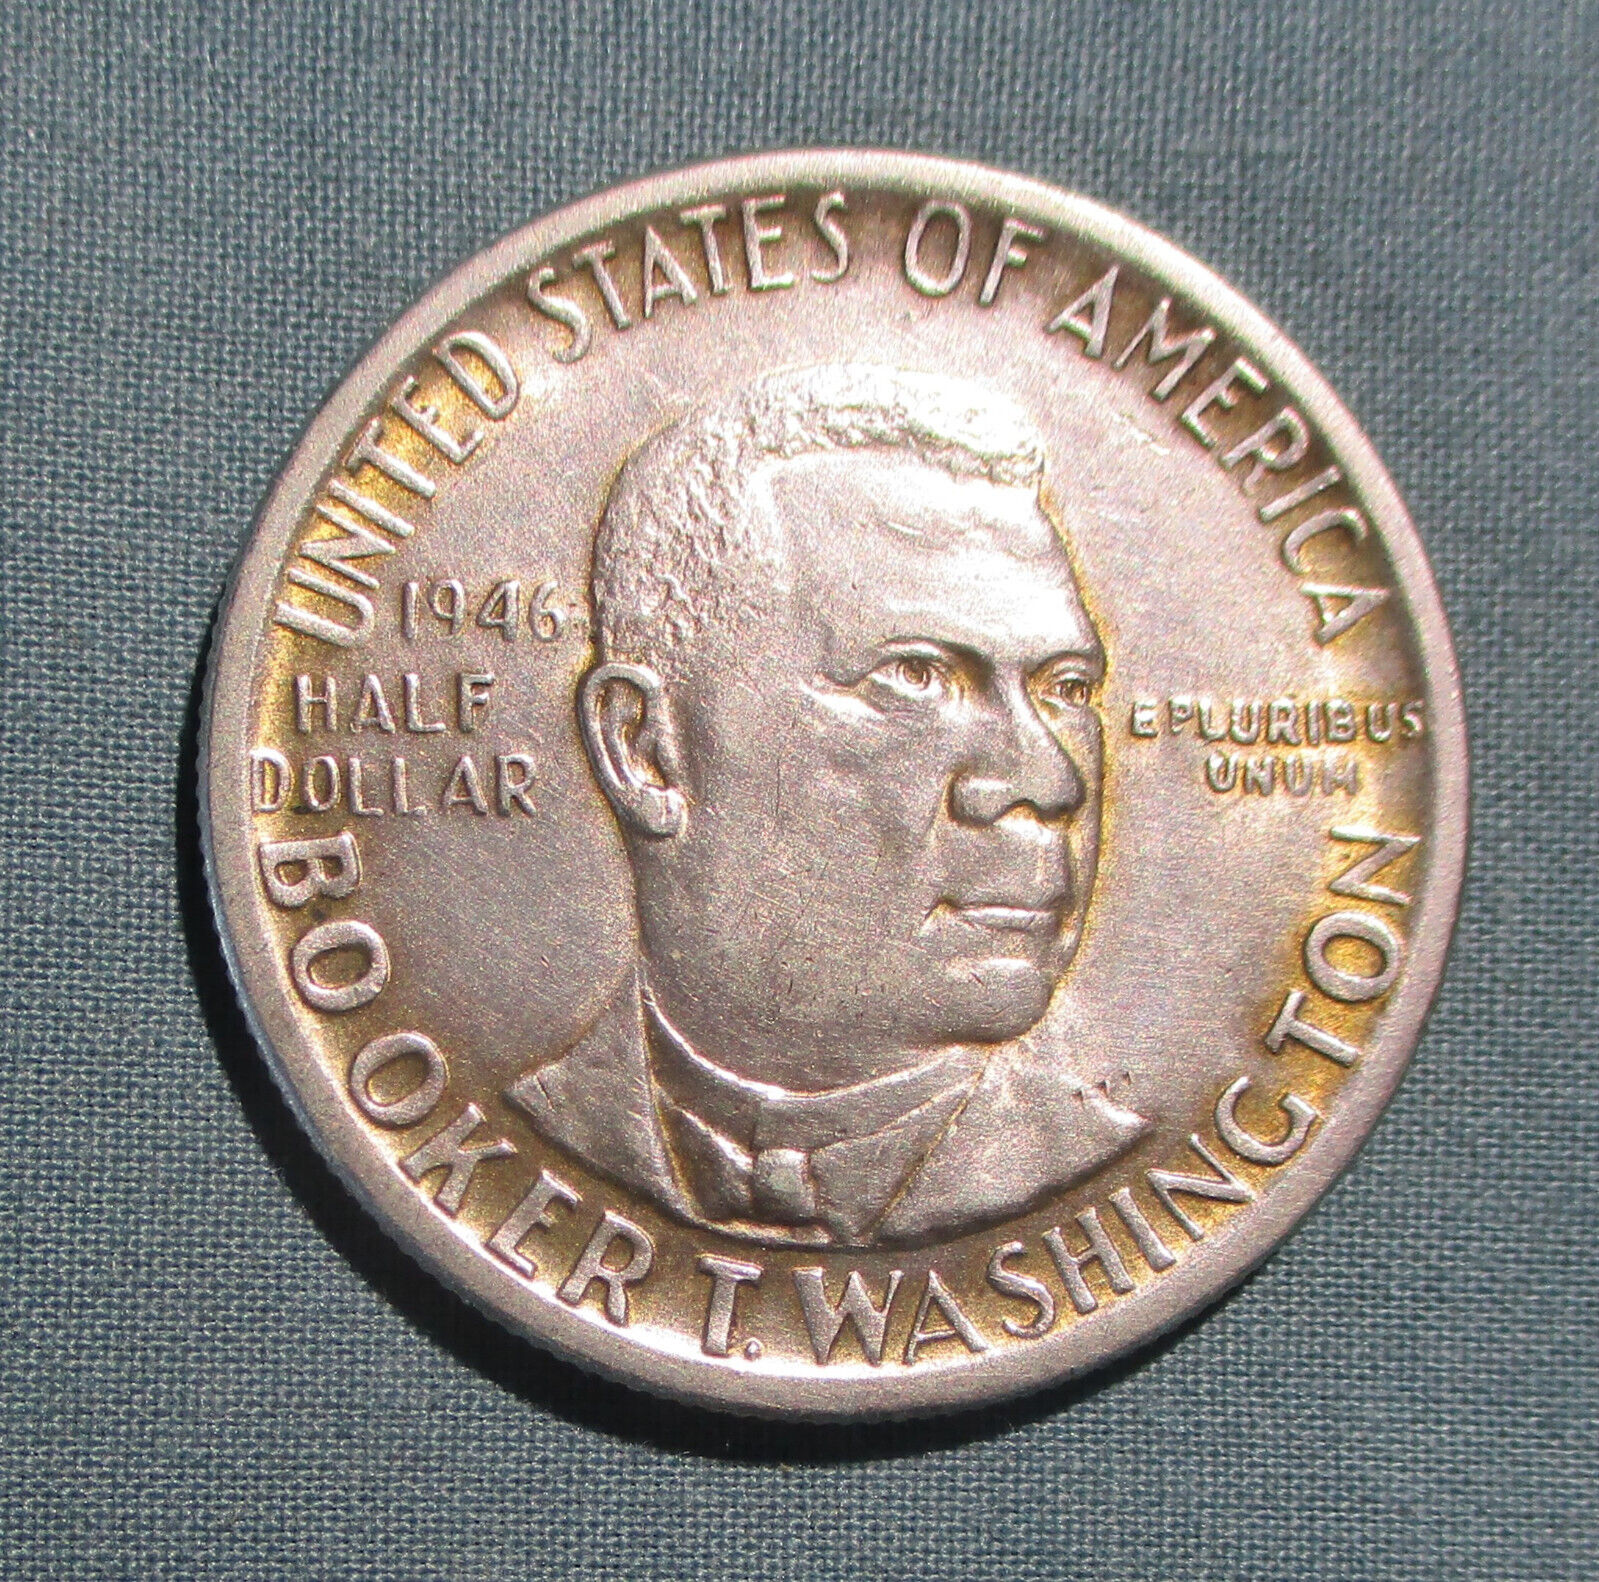 1946 U.s. Half Dollar Booker T. Washington - 50 Cents Silver Coin Higher Grade